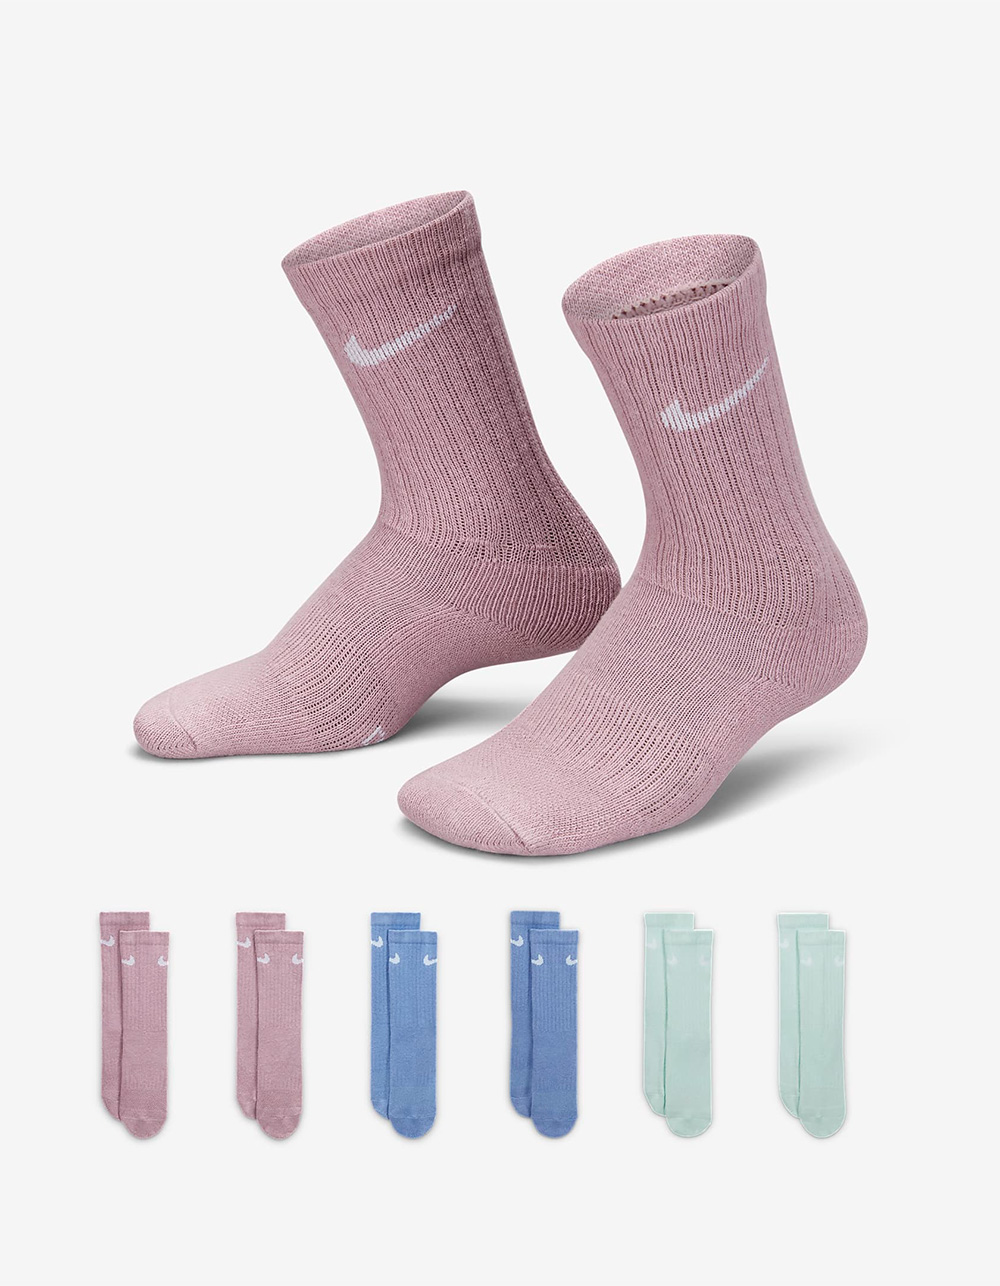 Girls' Socks: Cute Socks for Girls